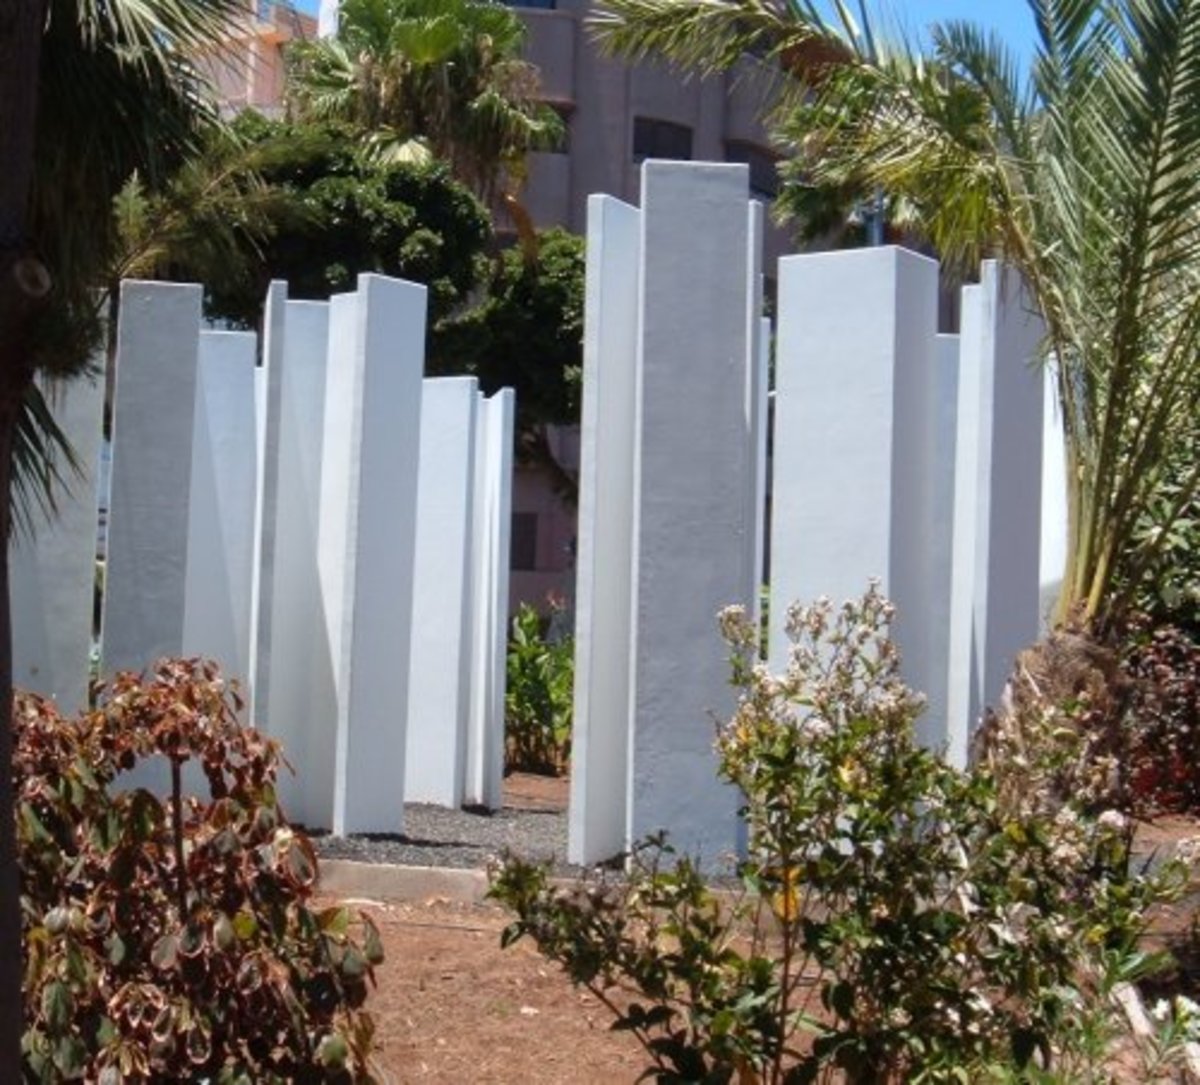 Monoliths in Parque García Sanabria